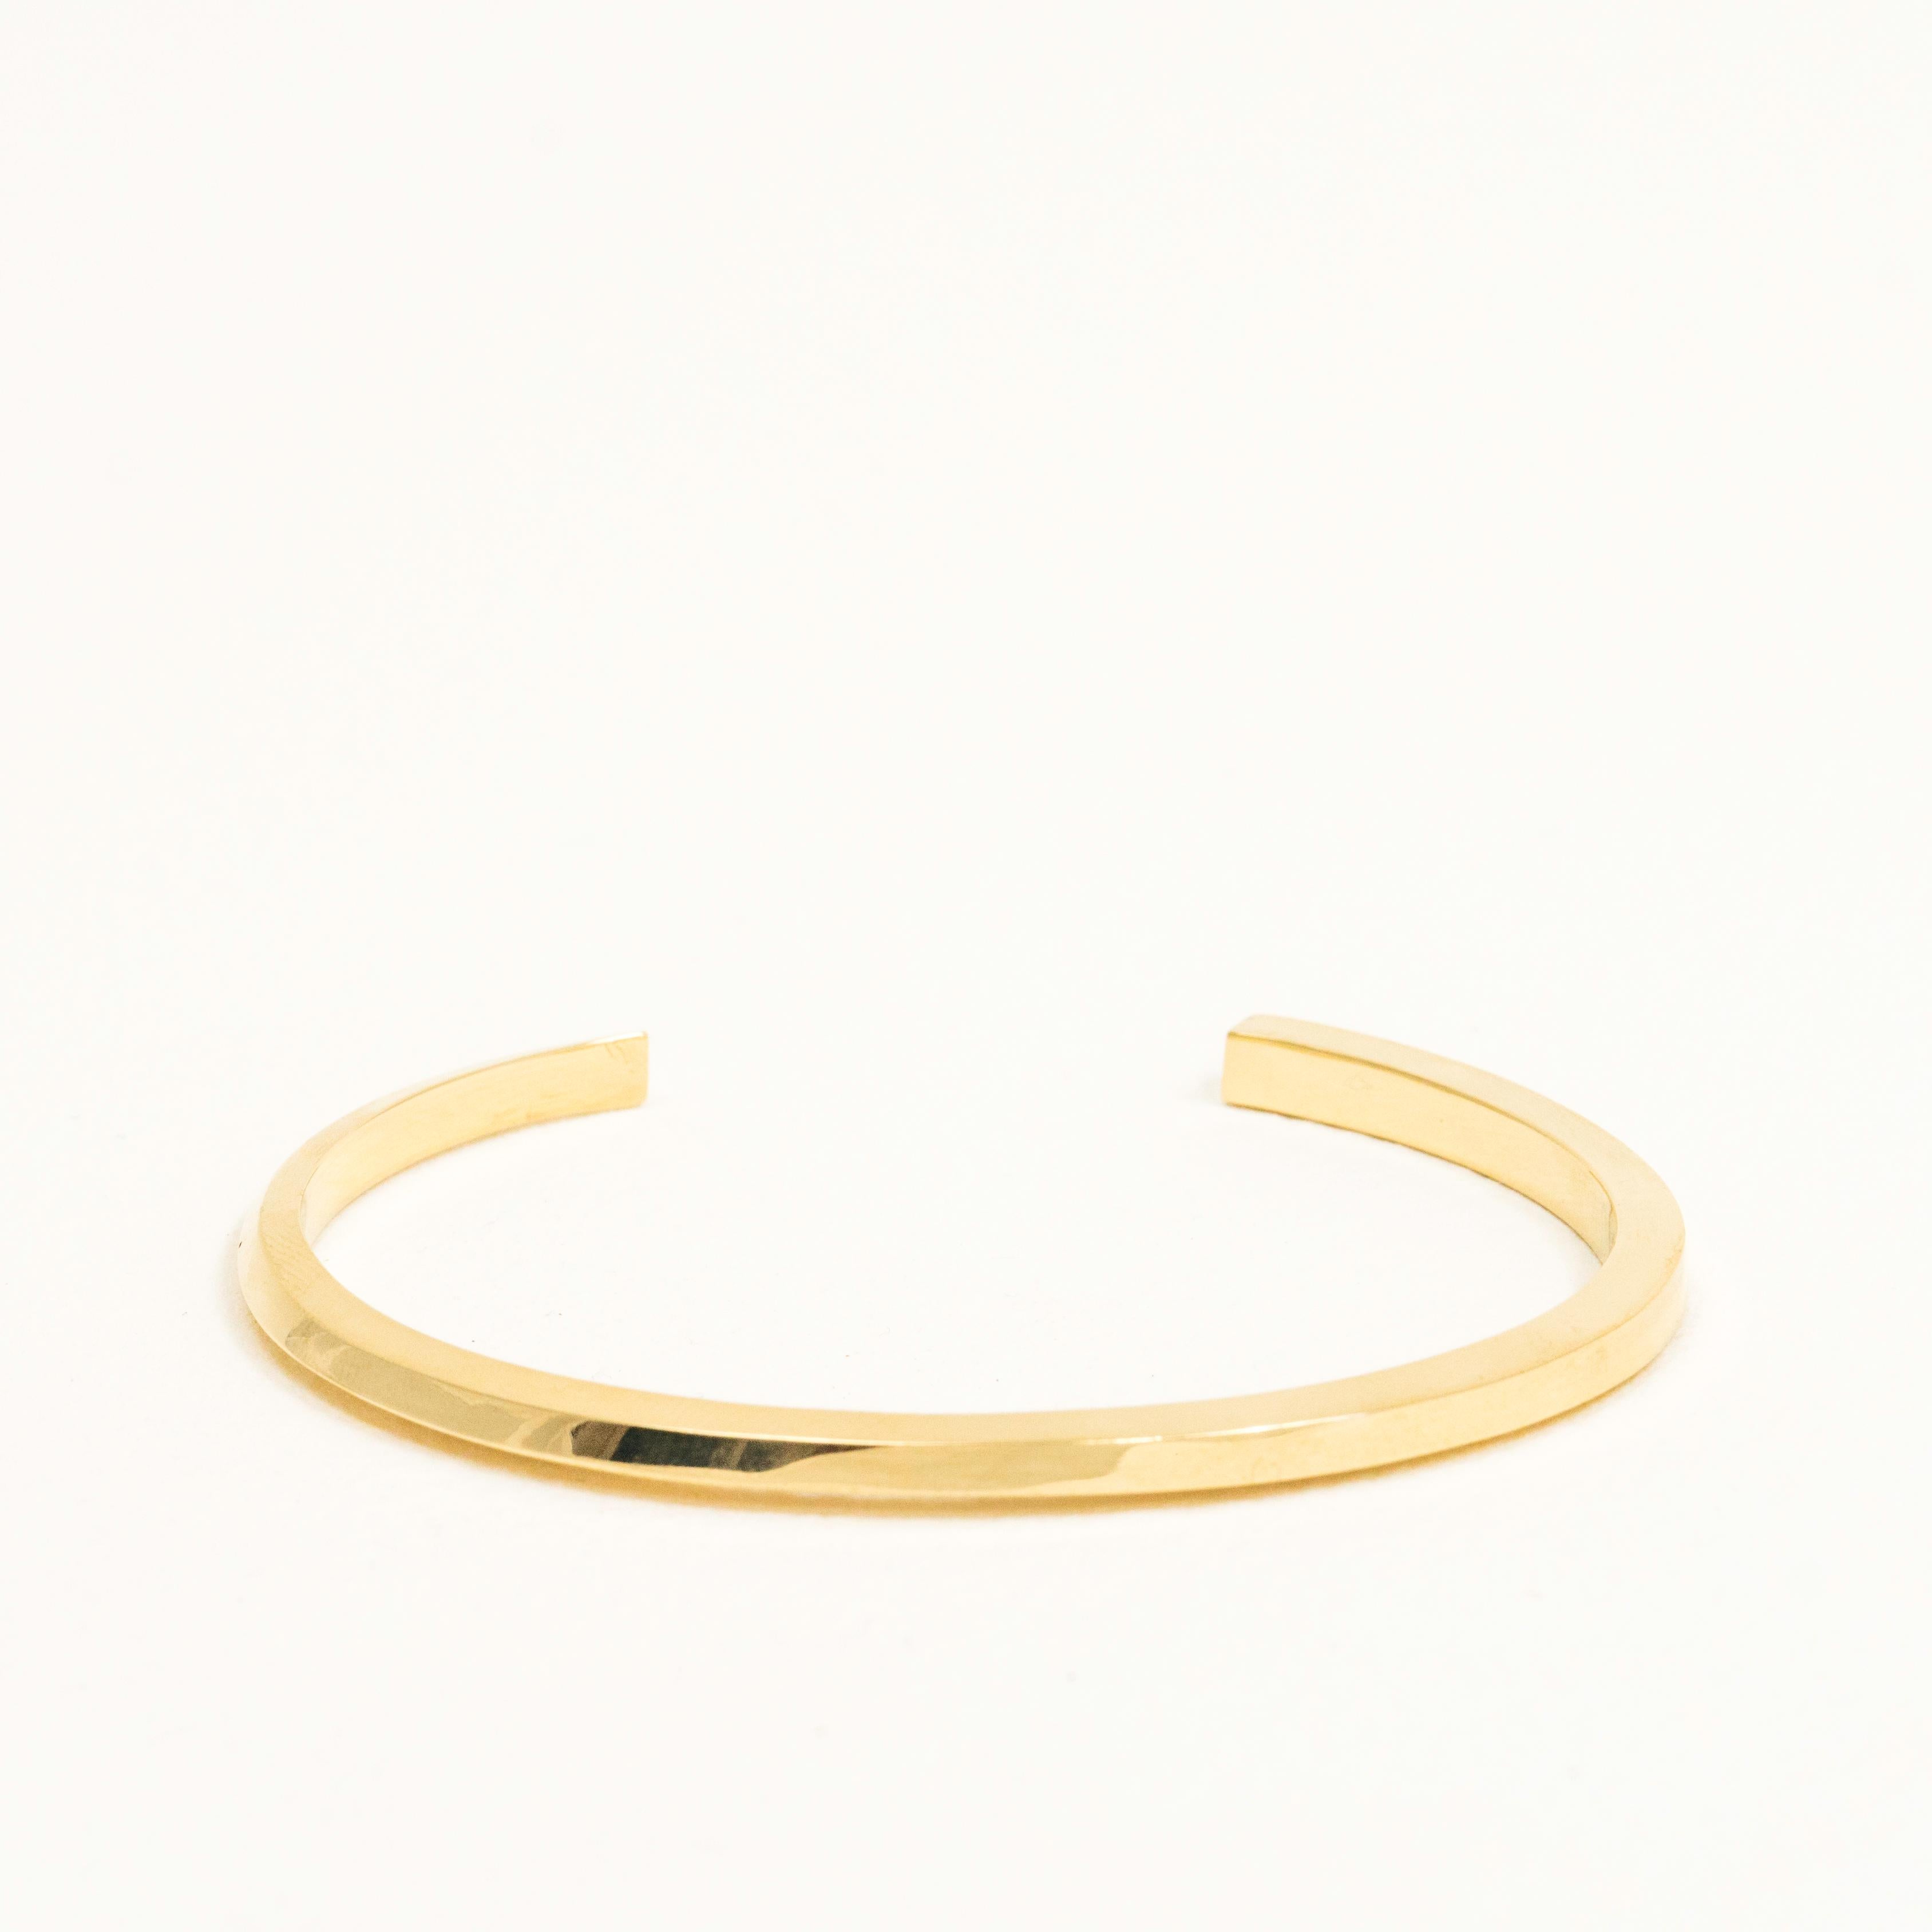 Le Flow Cuff Bracelet en or massif 14k commence par un triangle et évolue vers un carré à son extrémité opposée. Cet élégant bracelet peut se fondre dans n'importe quel style ou devenir à lui seul une brillante pièce d'apparat minimaliste. Le